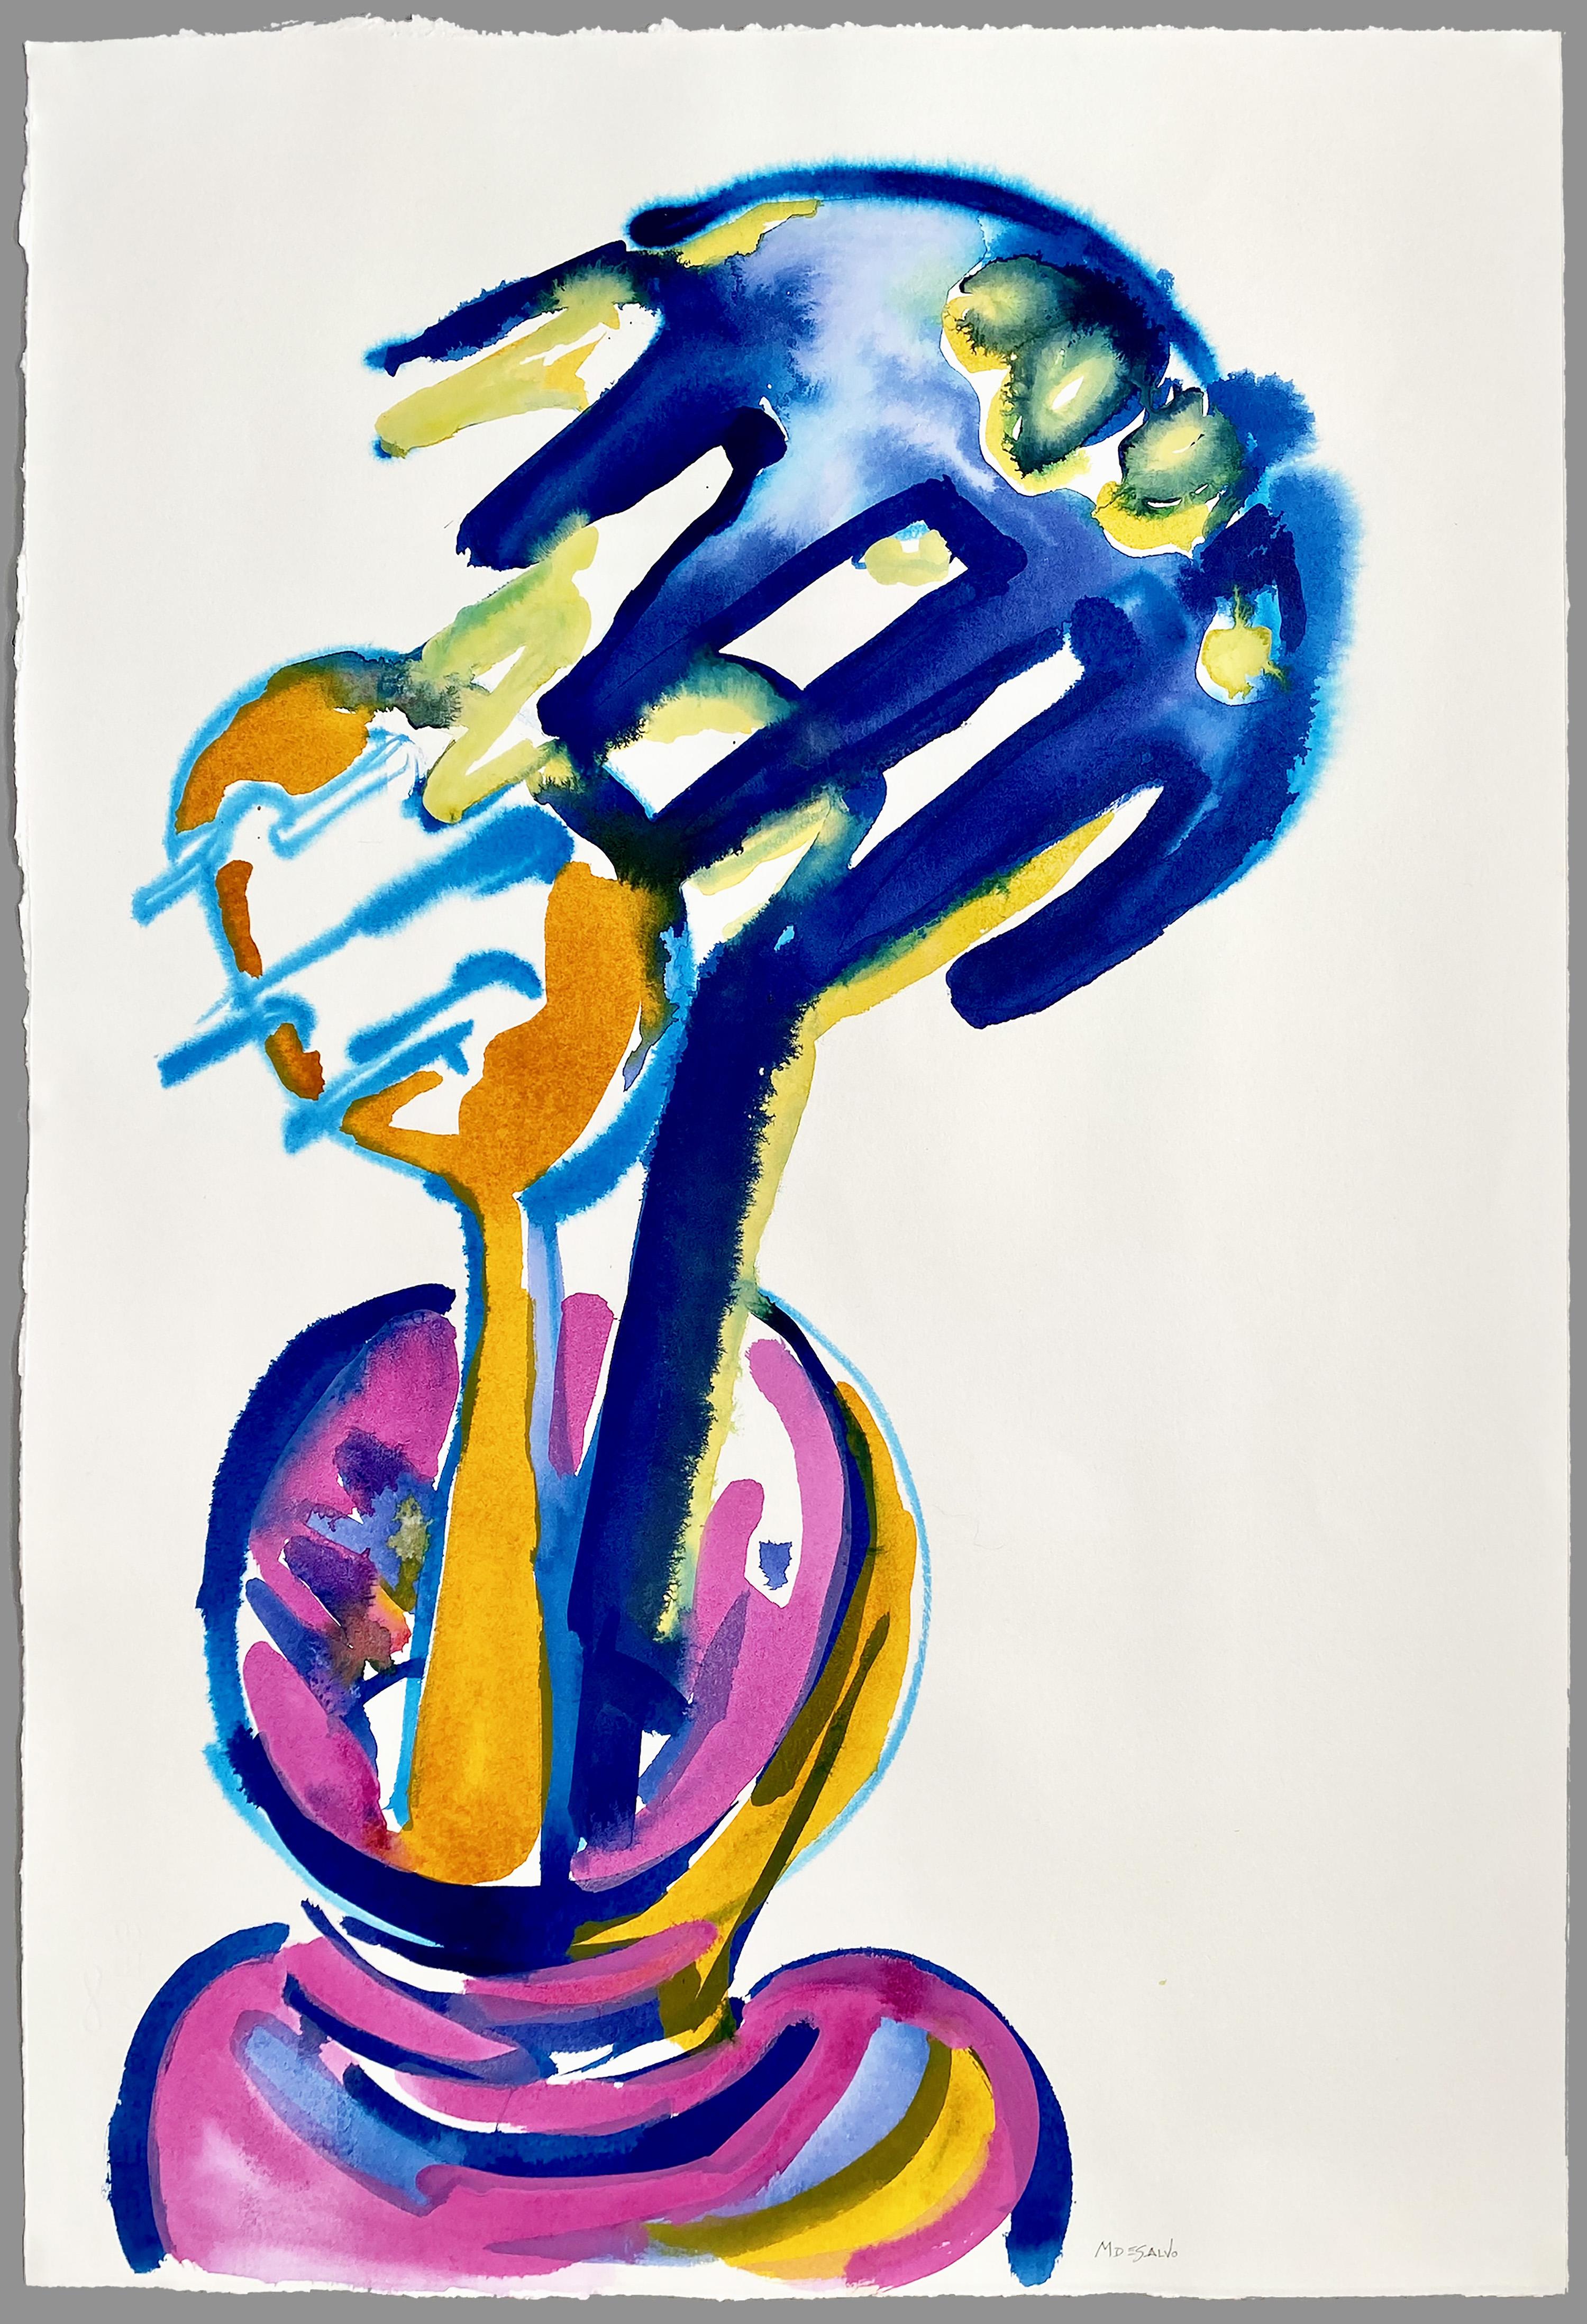 "Deux cuillères à spaghetti", contemporain, italien, bleu, rose, peinture acrylique. - Painting de Monica DeSalvo